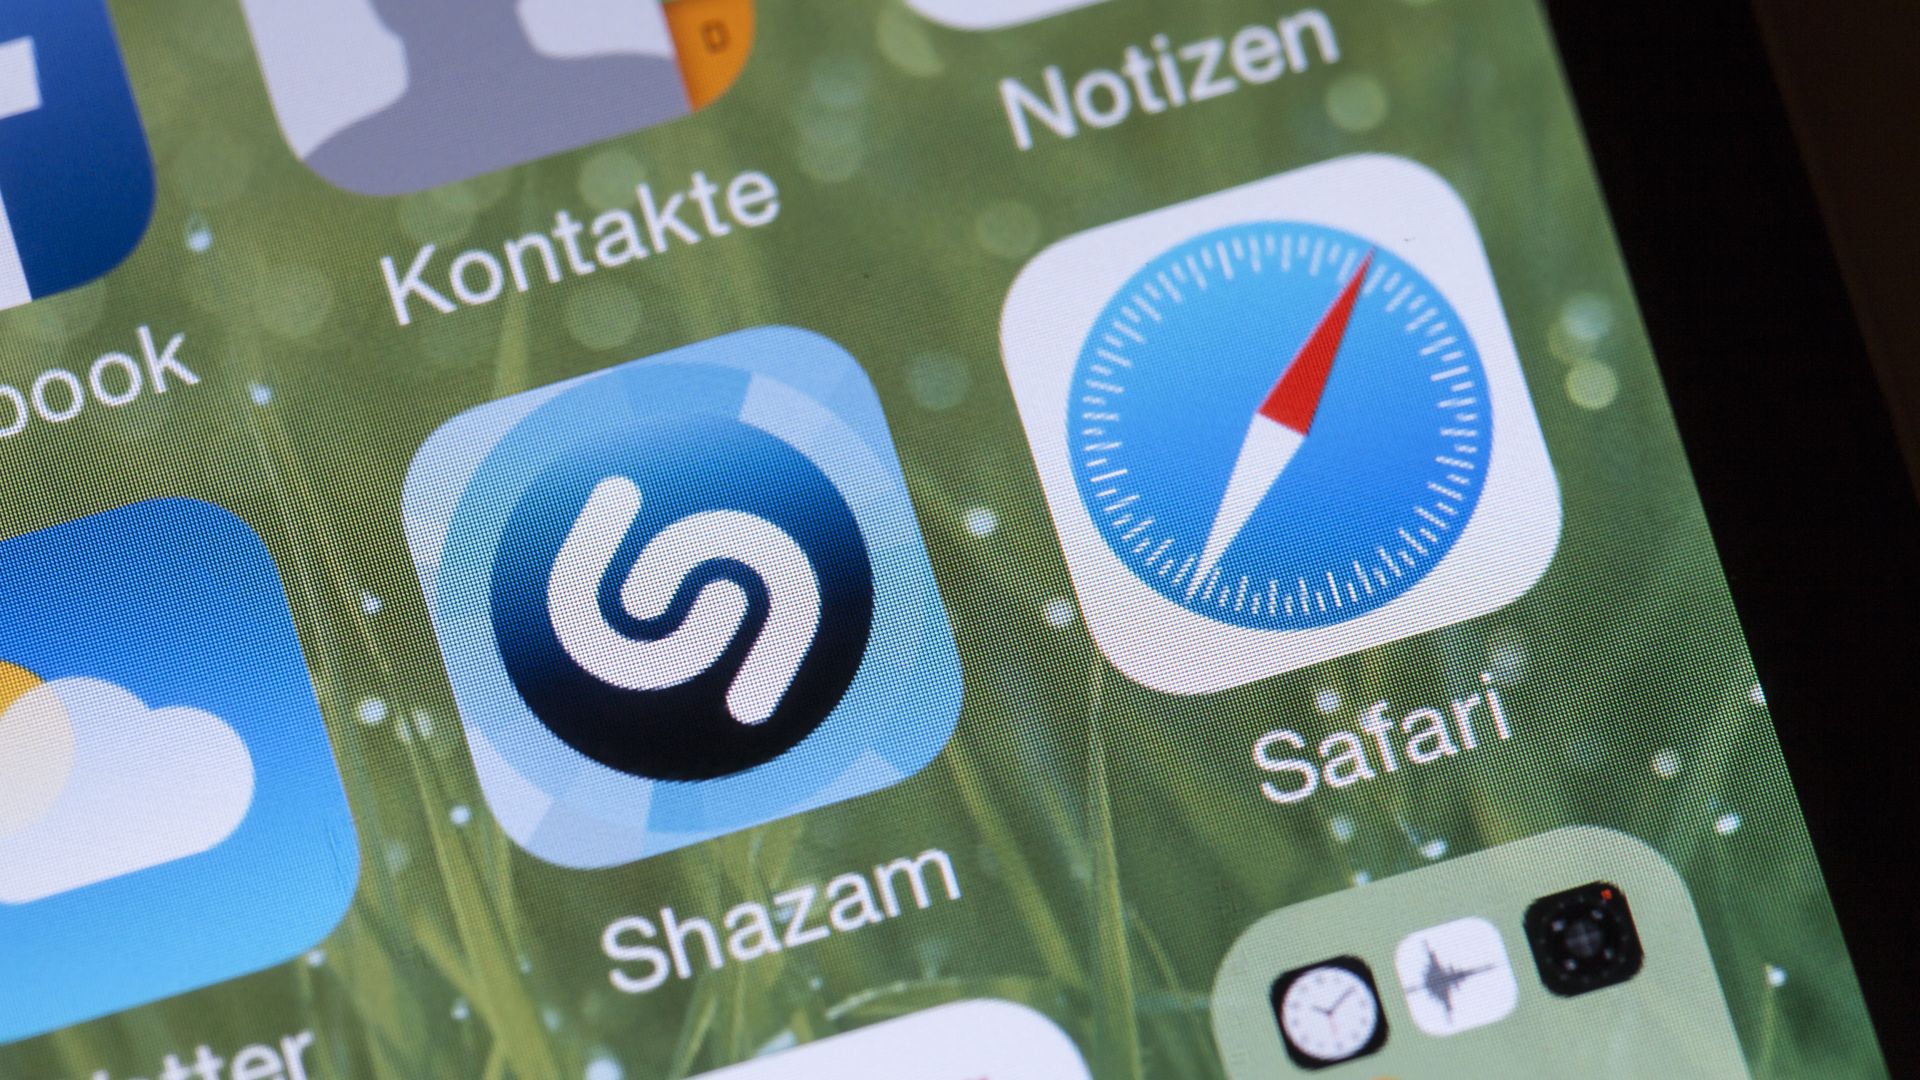 Shazam app on a German iPhone